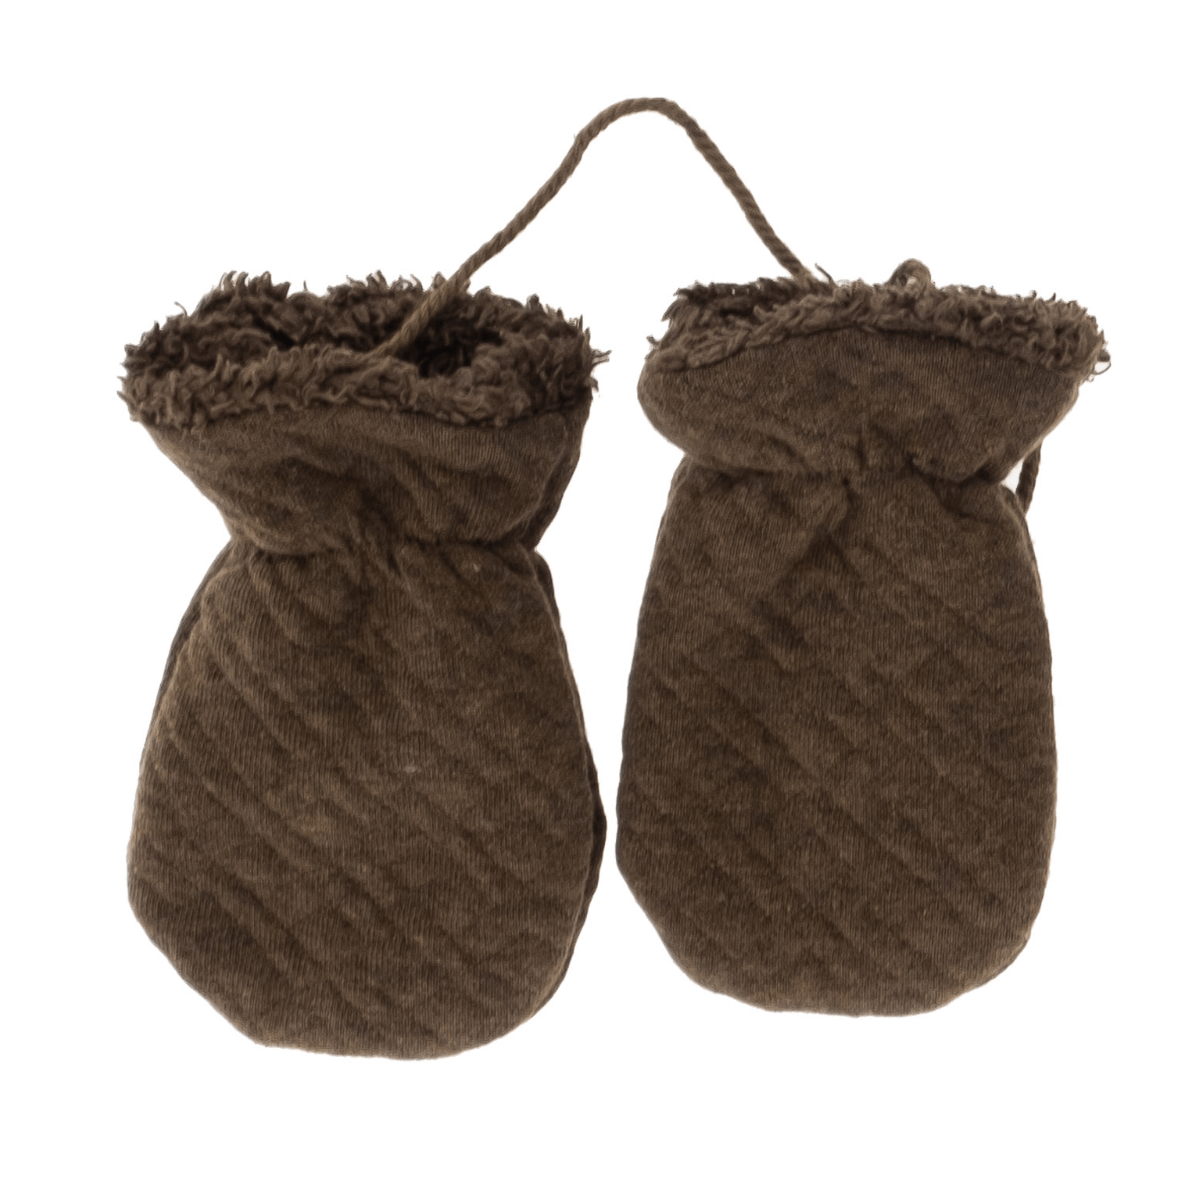 Riffle Outdoor Gloves Quilt Brown - Baby Wanten - Bruin1